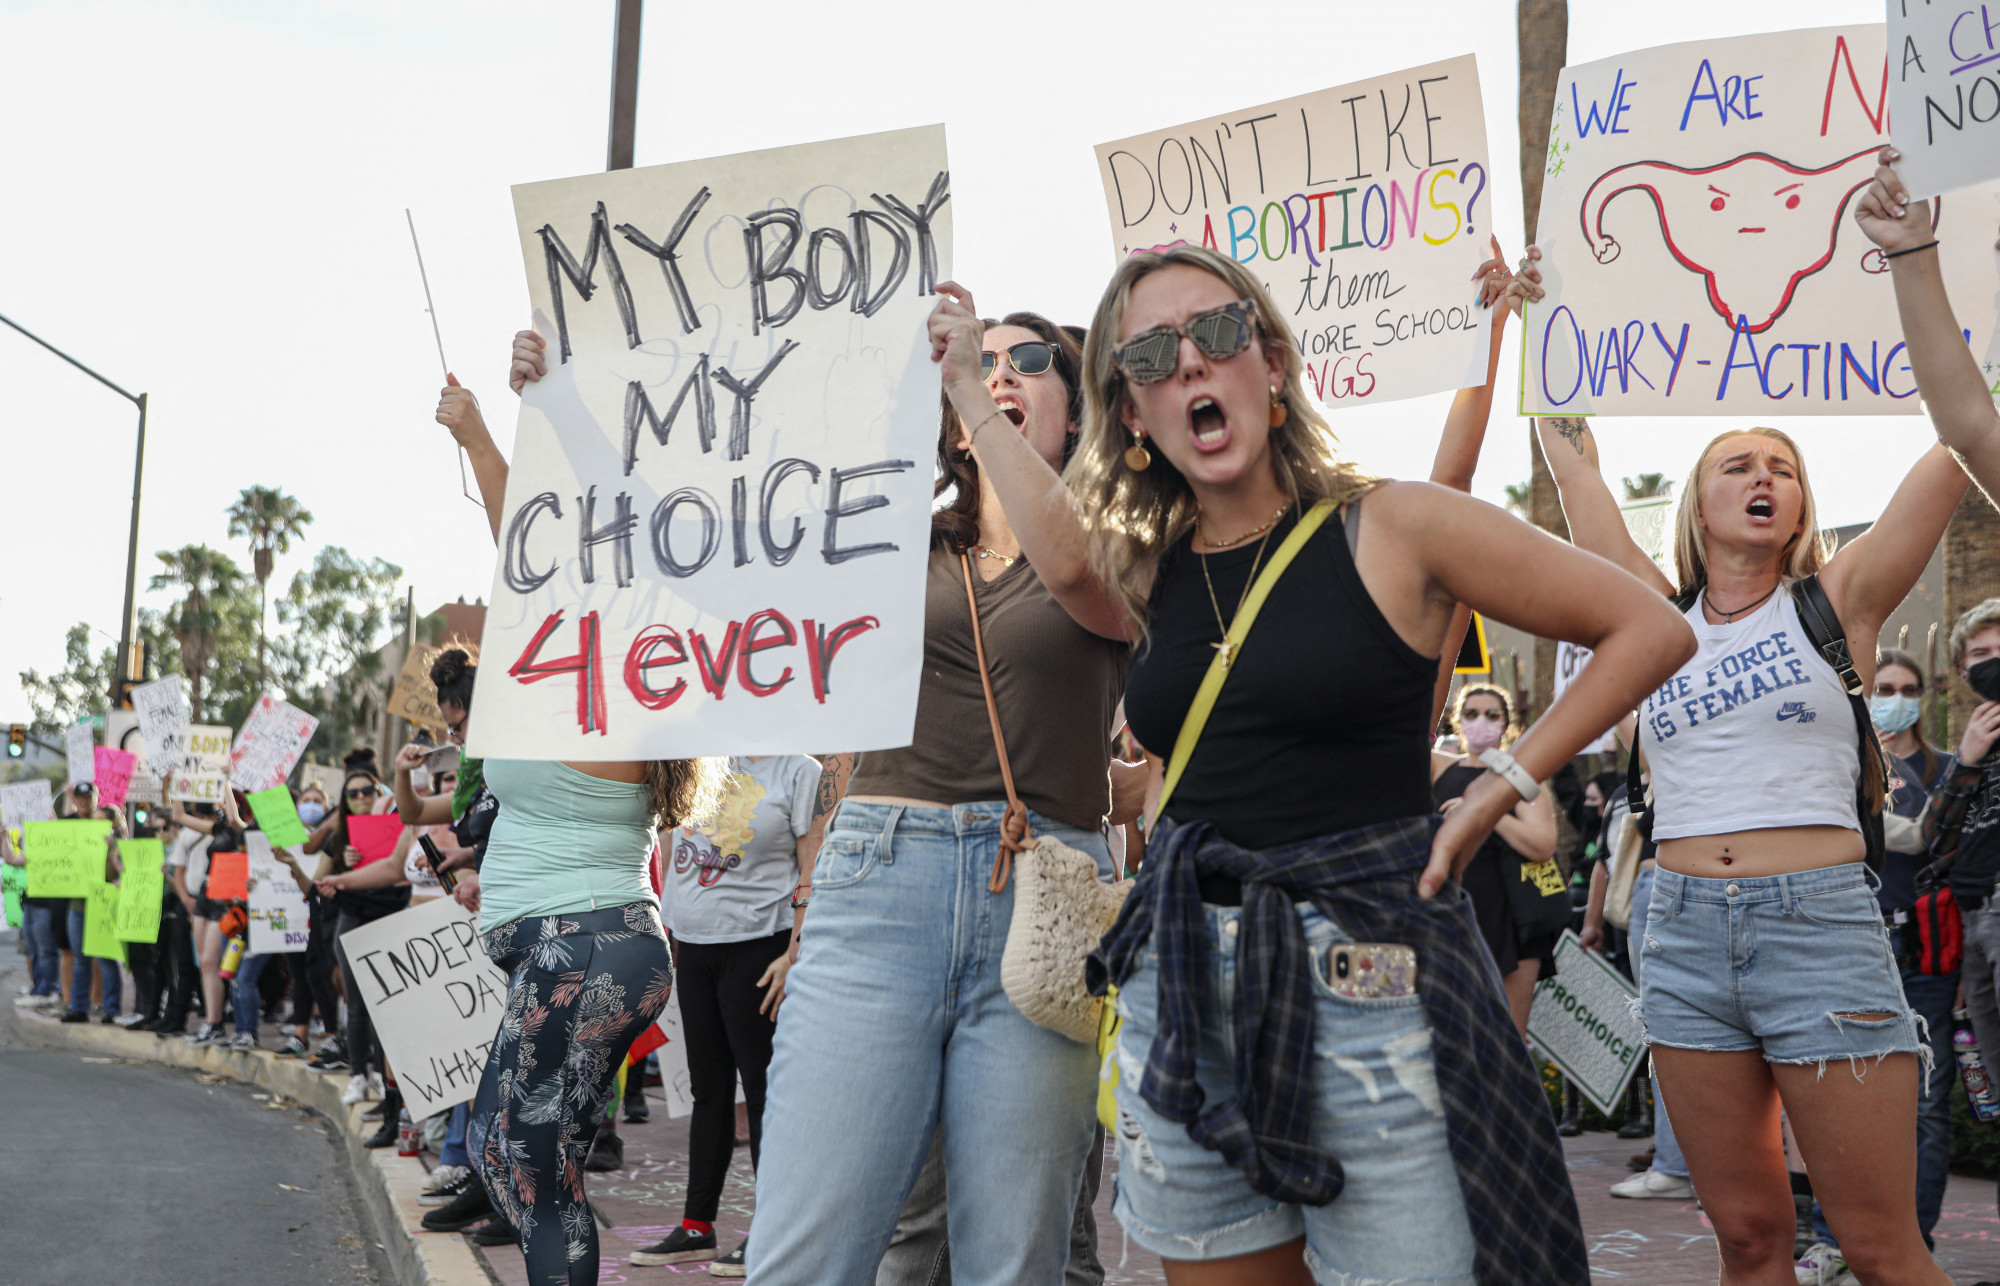 Egy texasi bíró túl szigorúnak ítélte az abortusztiltást a kockázatos terhességeknél